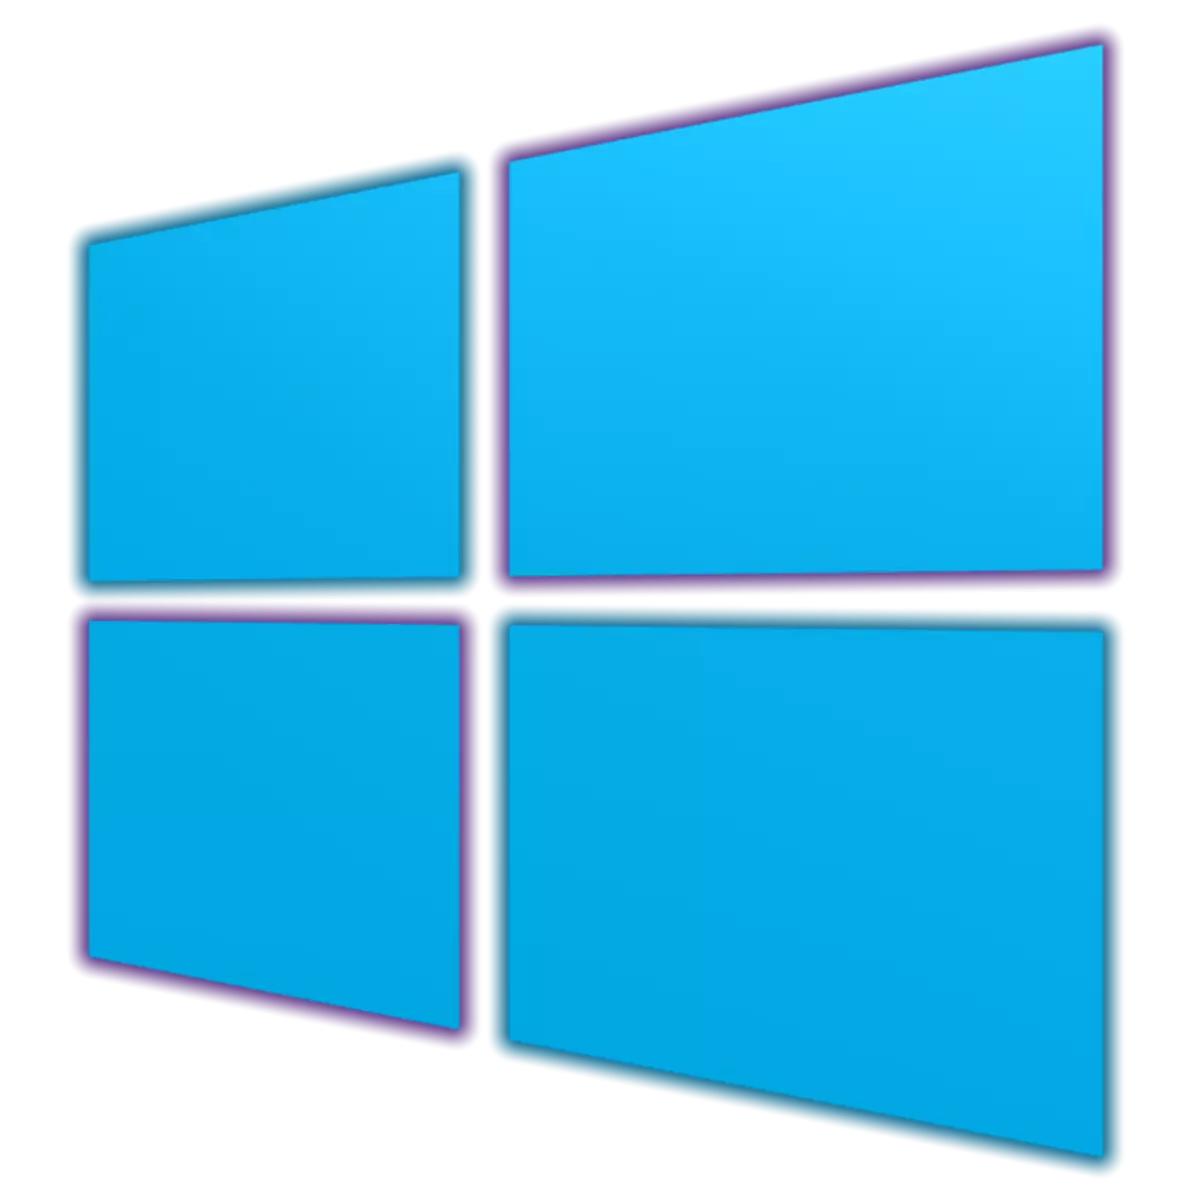 Адрозненні версій Windows 10